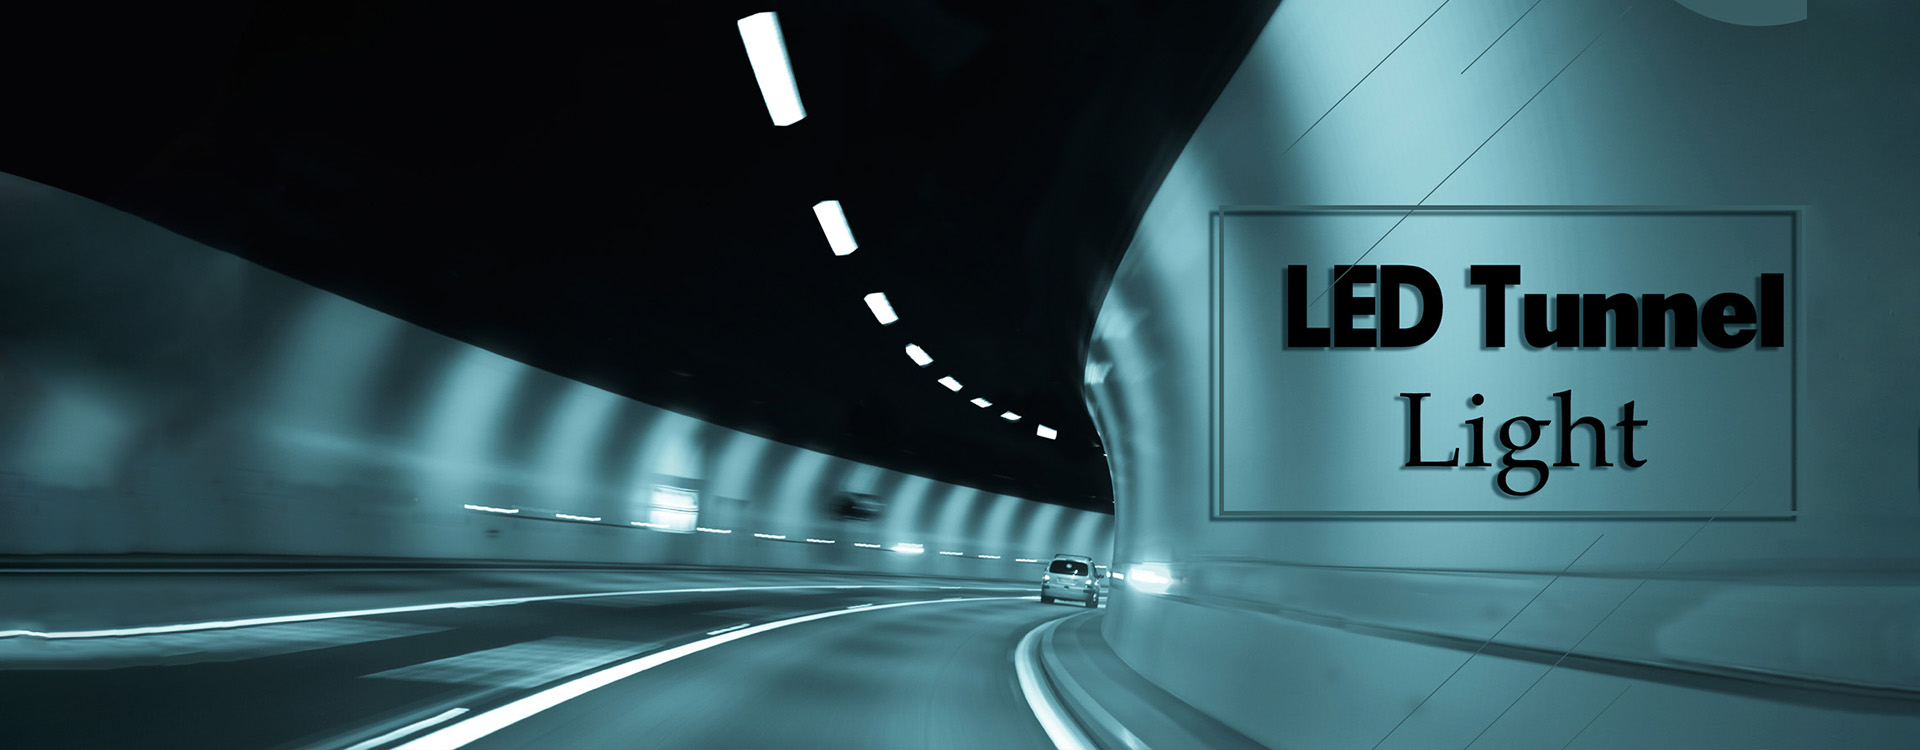 led-tunel-lumină-21